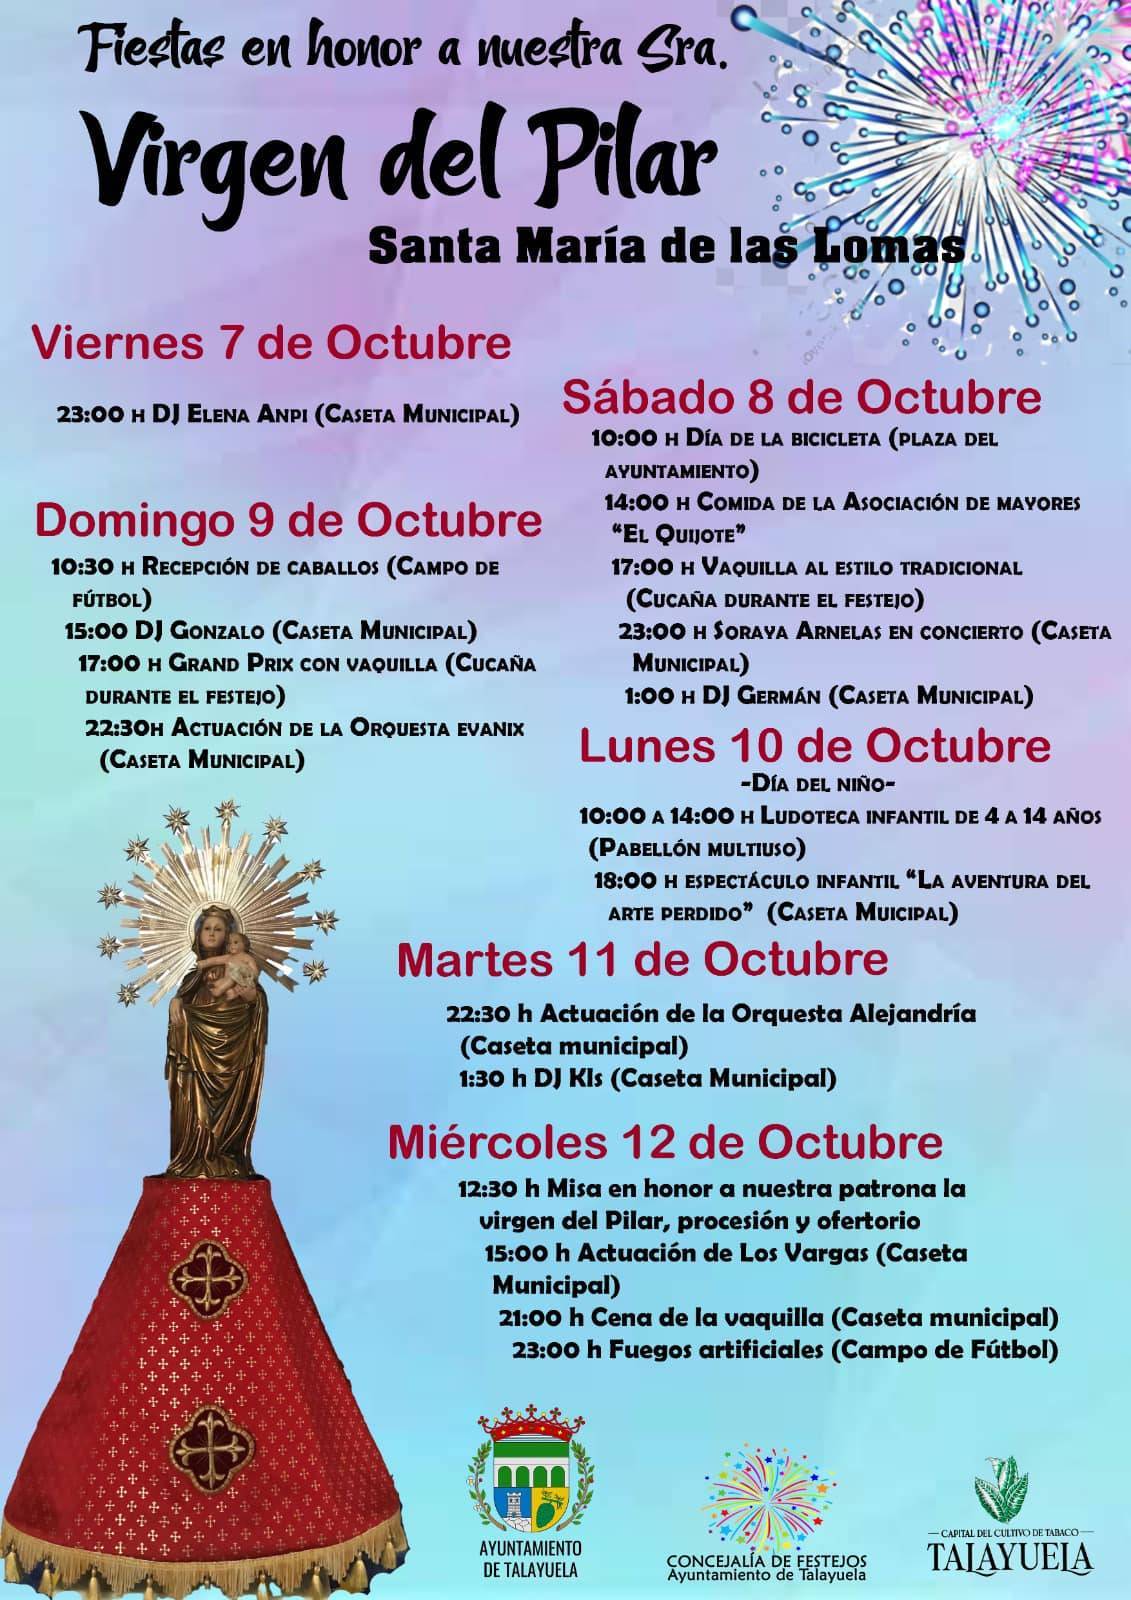 Fiestas en honor a nuestra señora Virgen del Pilar (2022) - Santa María de las Lomas (Cáceres)